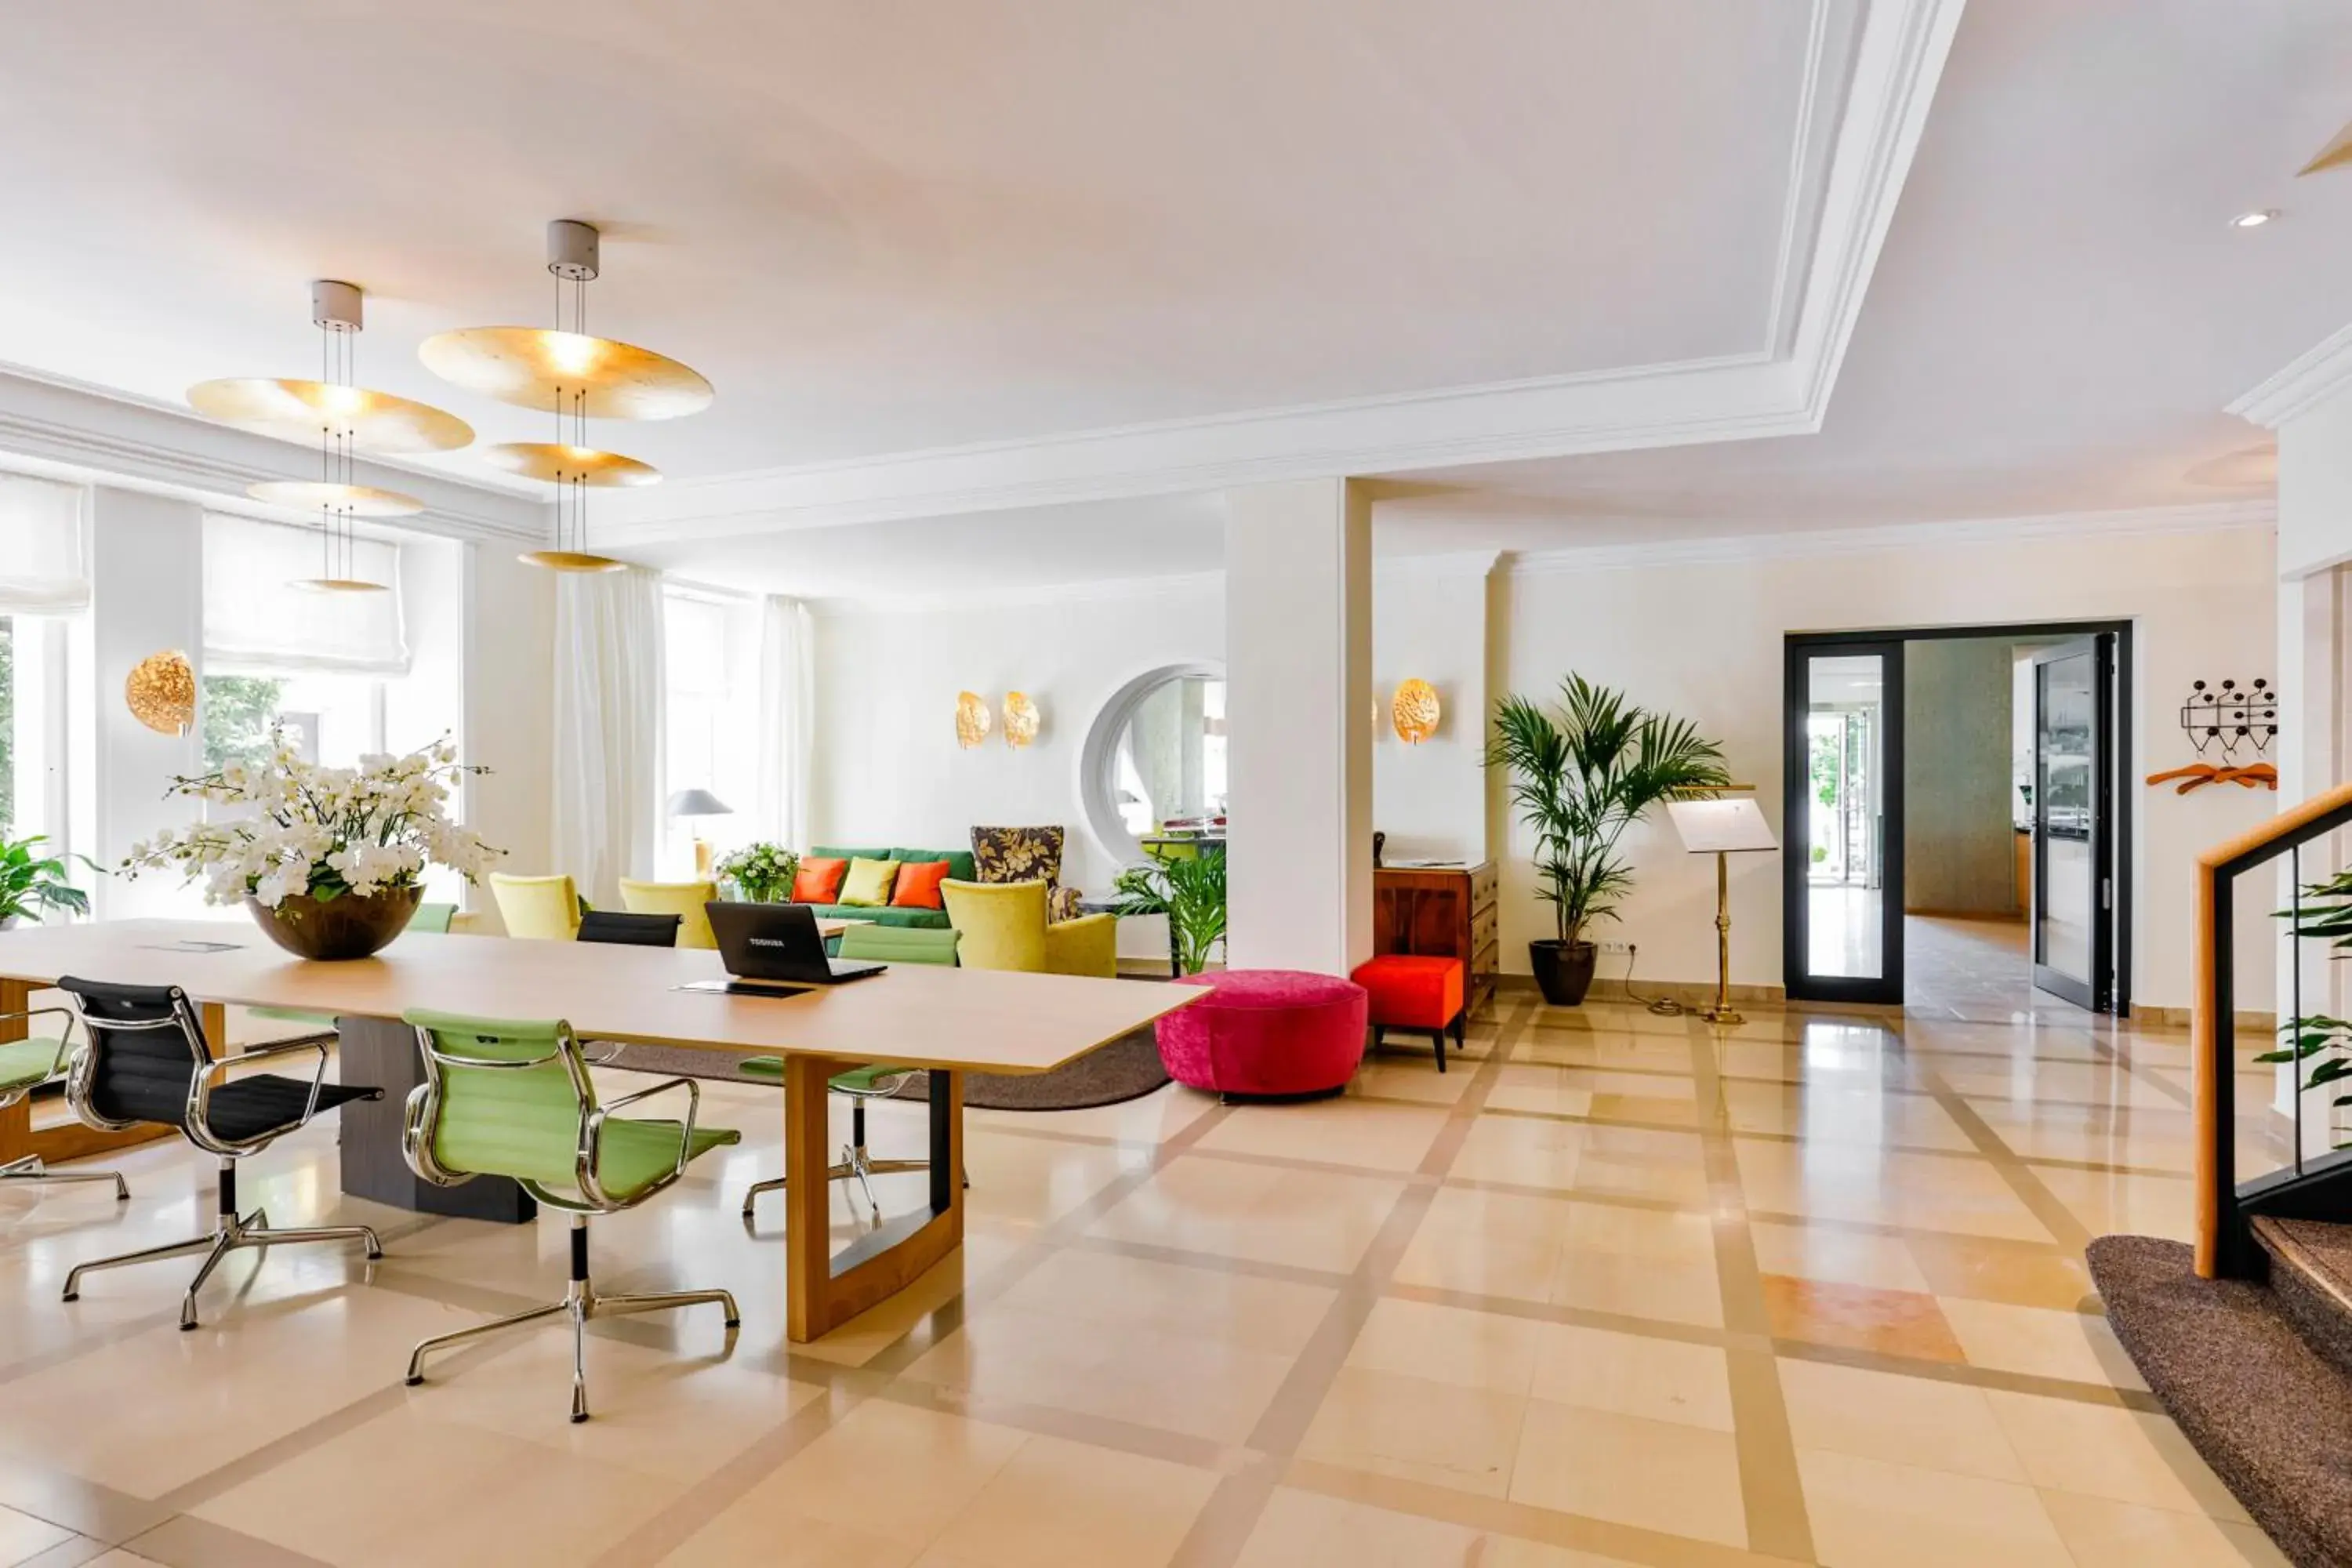 Lobby or reception in Hotel Reutemann-Seegarten